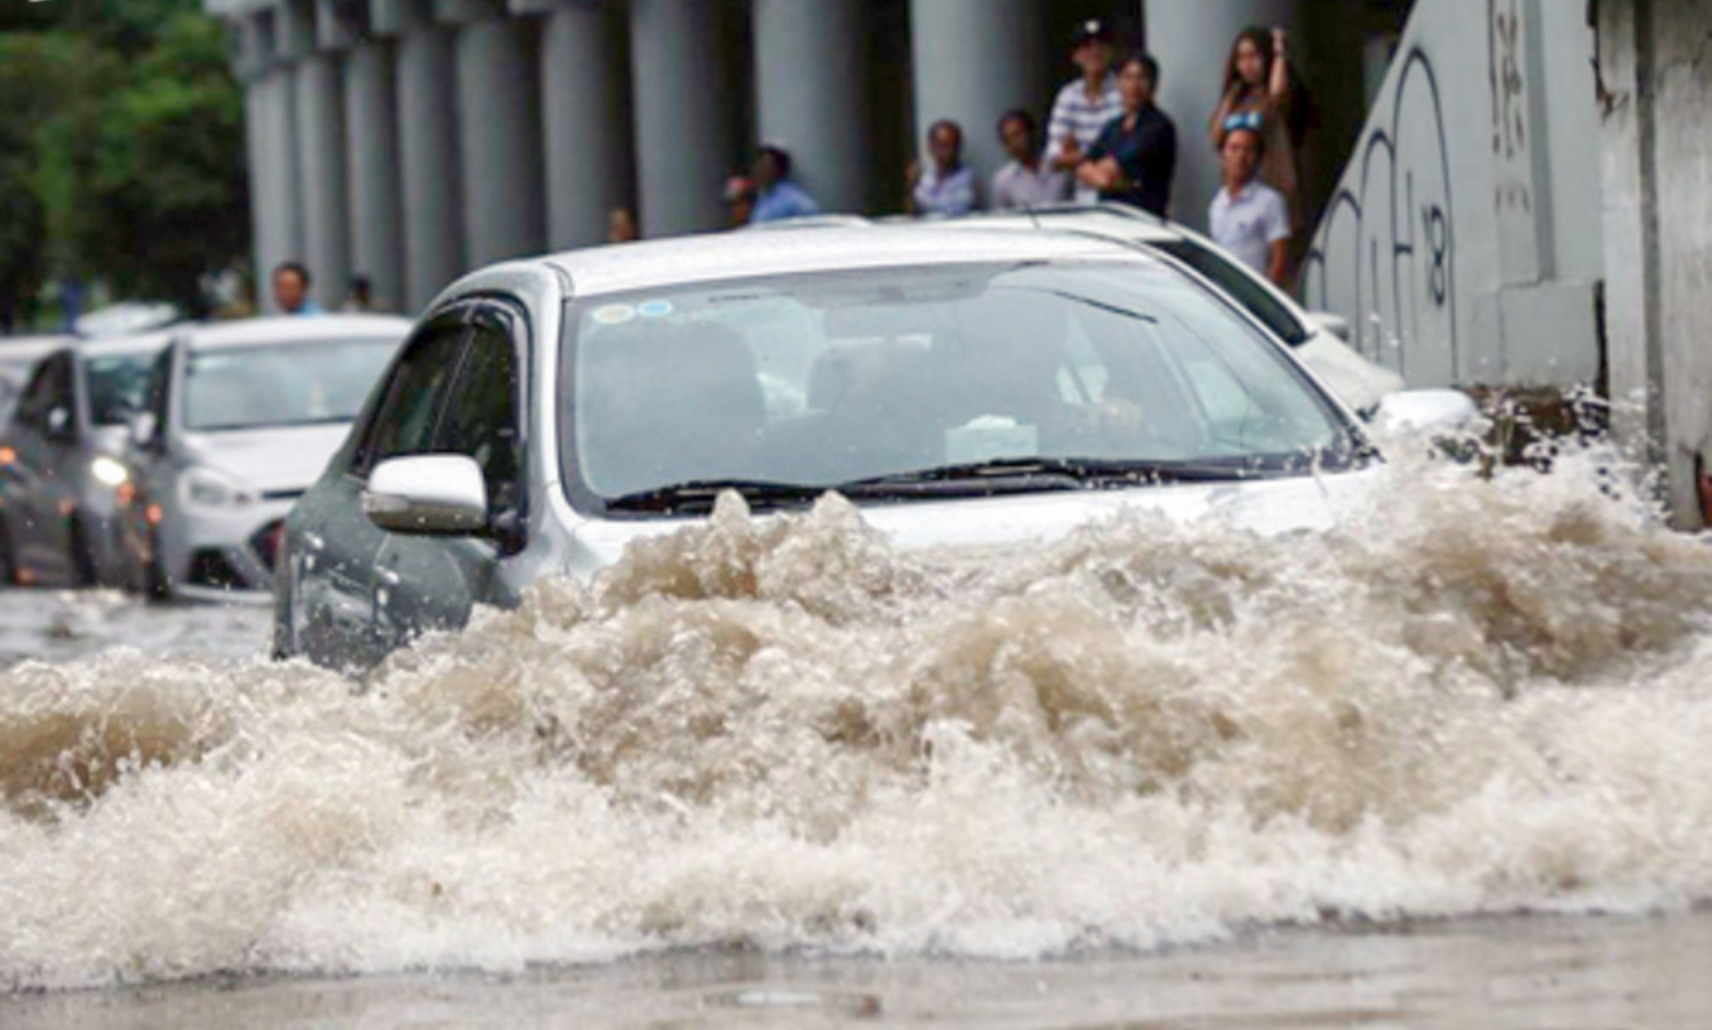 Xe ôtô bị ngập nước dẫn đến hỏng hóc là điều mà không chủ xe nào mong muốn xảy ra với “xế yêu” của mình. Ảnh: BD